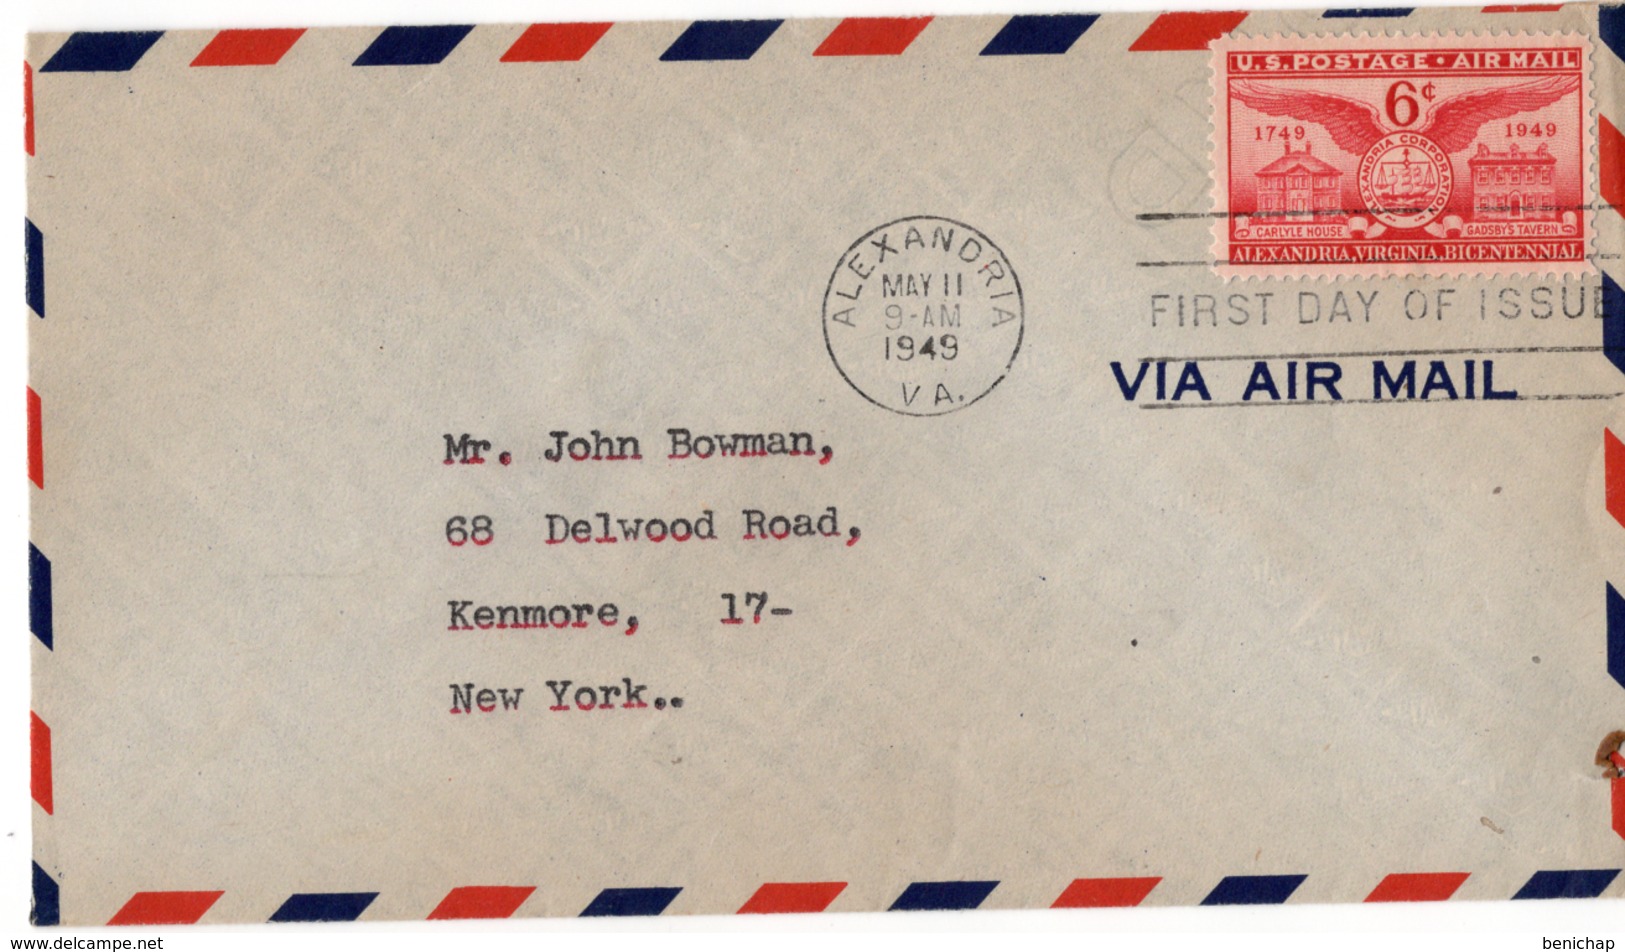 (R23) SCOTT C40 - FDI - VIA AIR MAIL - ALEXANDRIA - NEW YORK - 1949. - 2c. 1941-1960 Cartas & Documentos